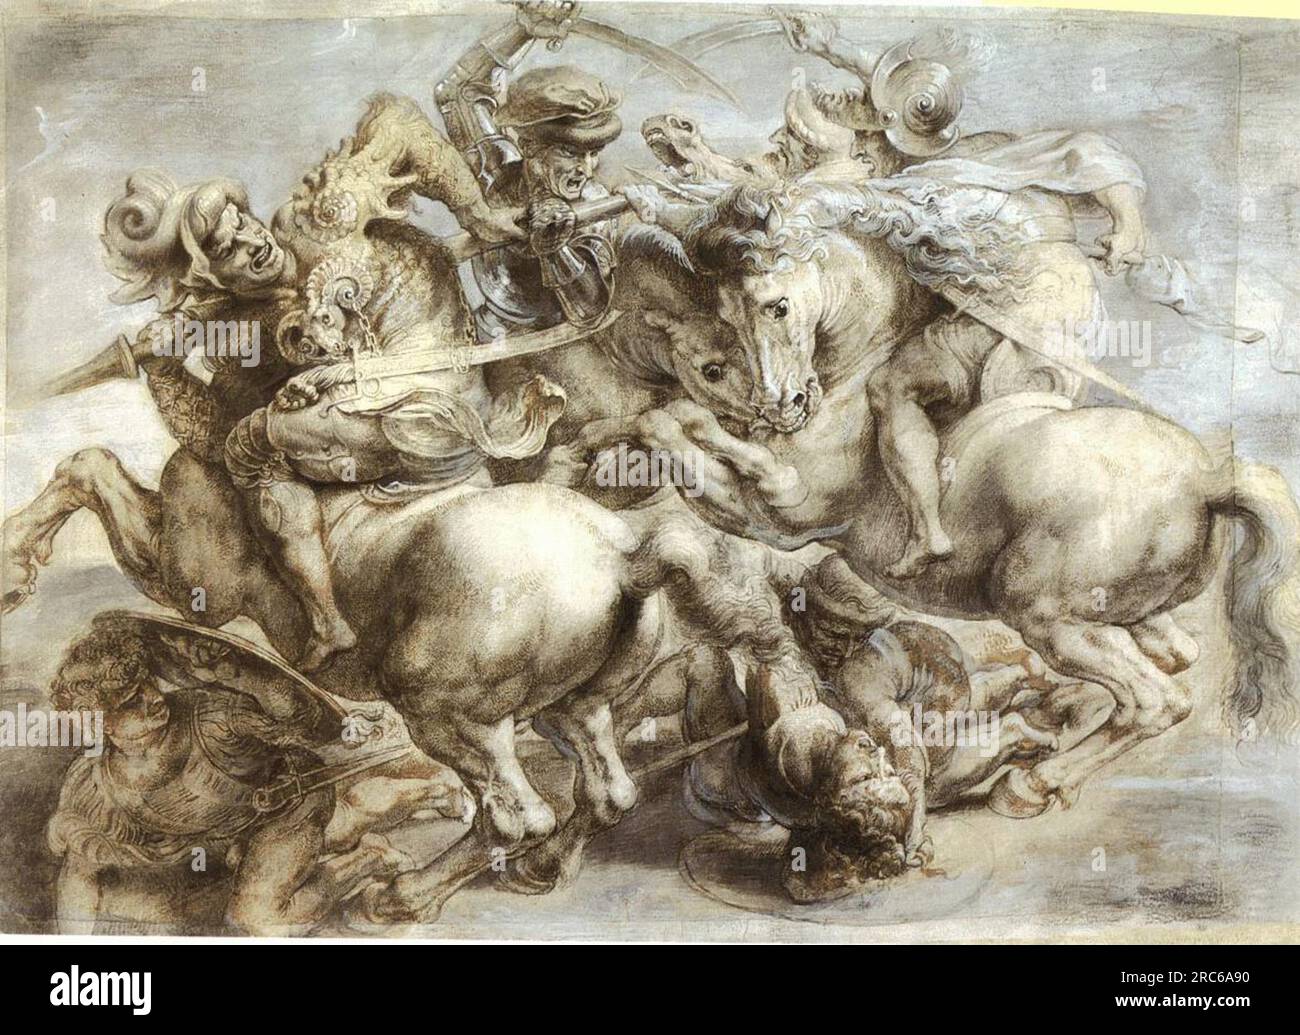 Copie de la bataille d'Anghiari, la peinture perdue de Léonard de Vinci vers 1603 ; Italie de Pierre Paul Rubens Banque D'Images